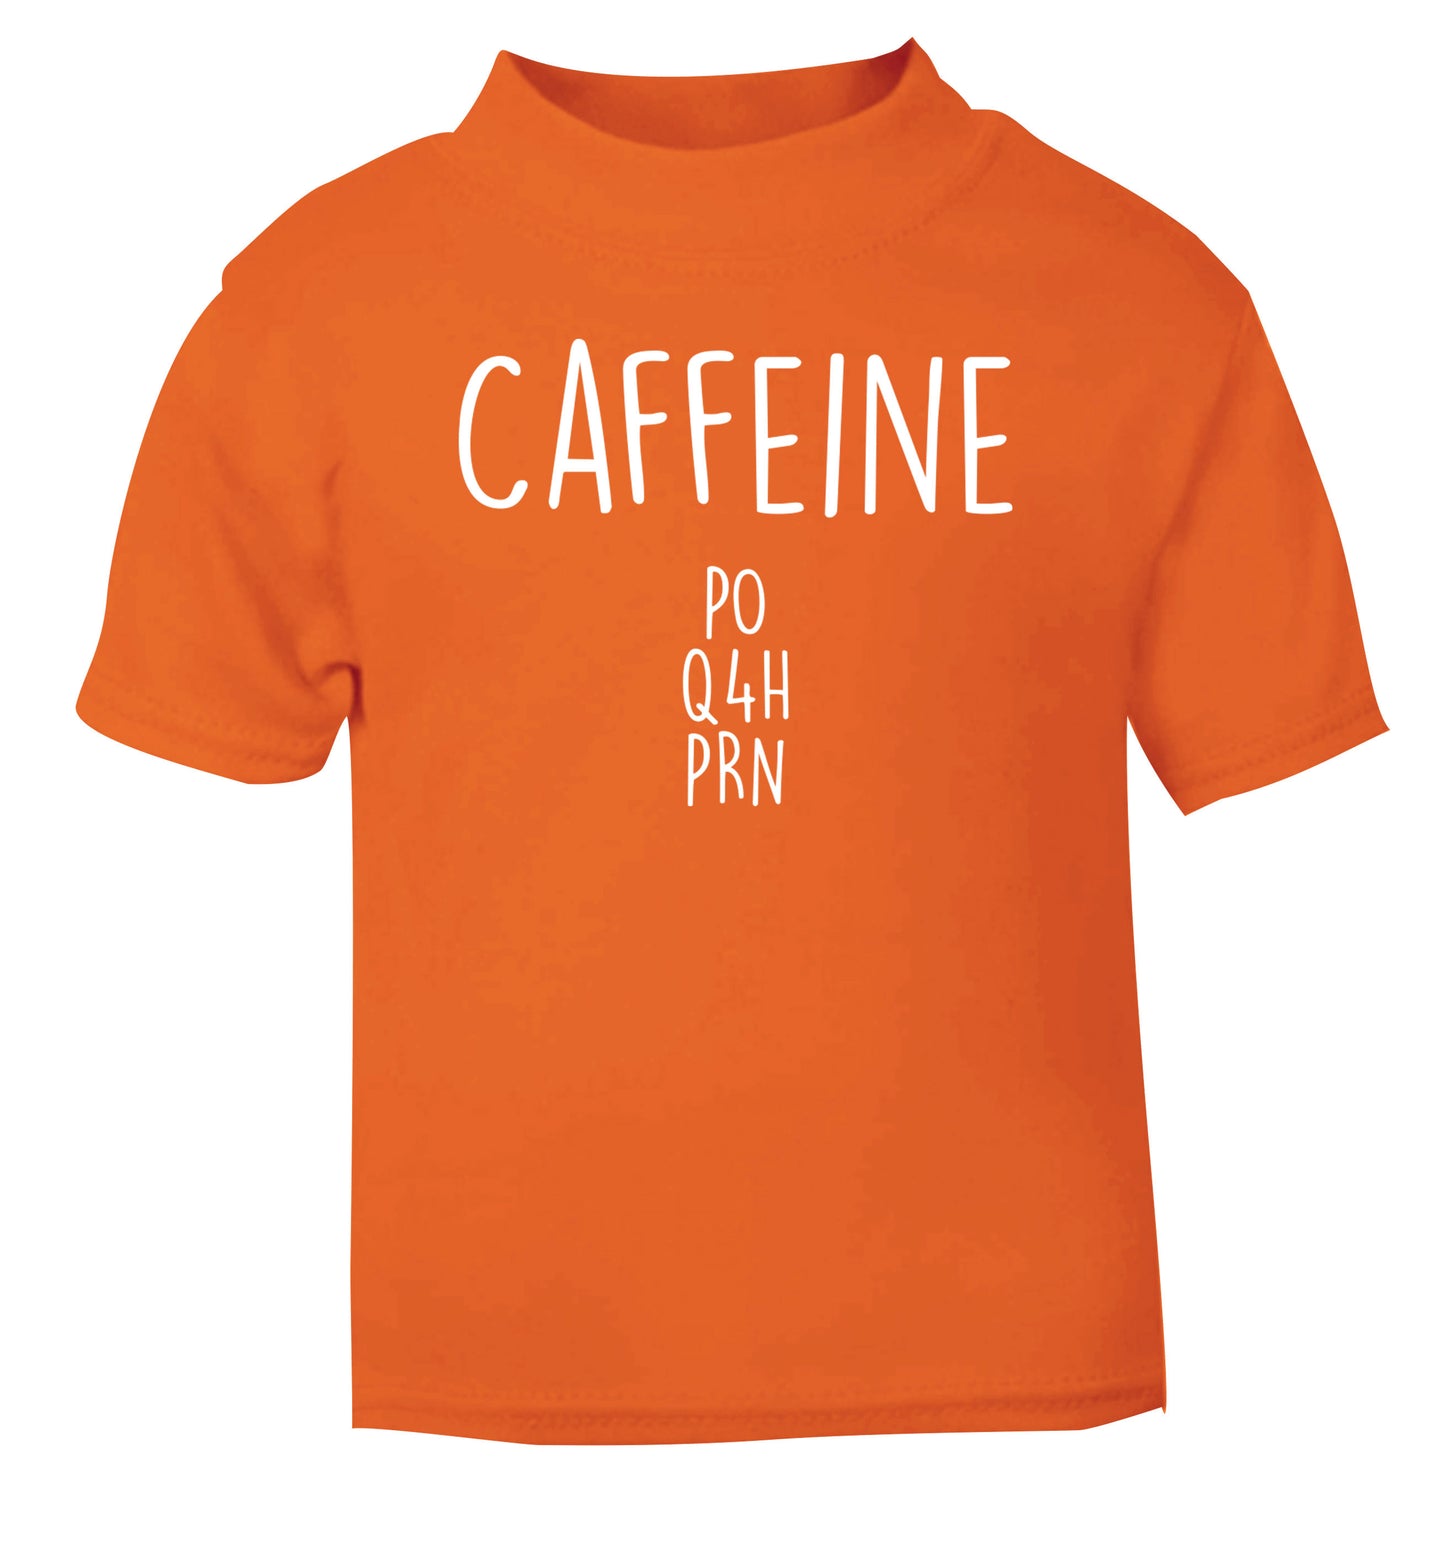 Caffeine PO Q4H PRN orange Baby Toddler Tshirt 2 Years